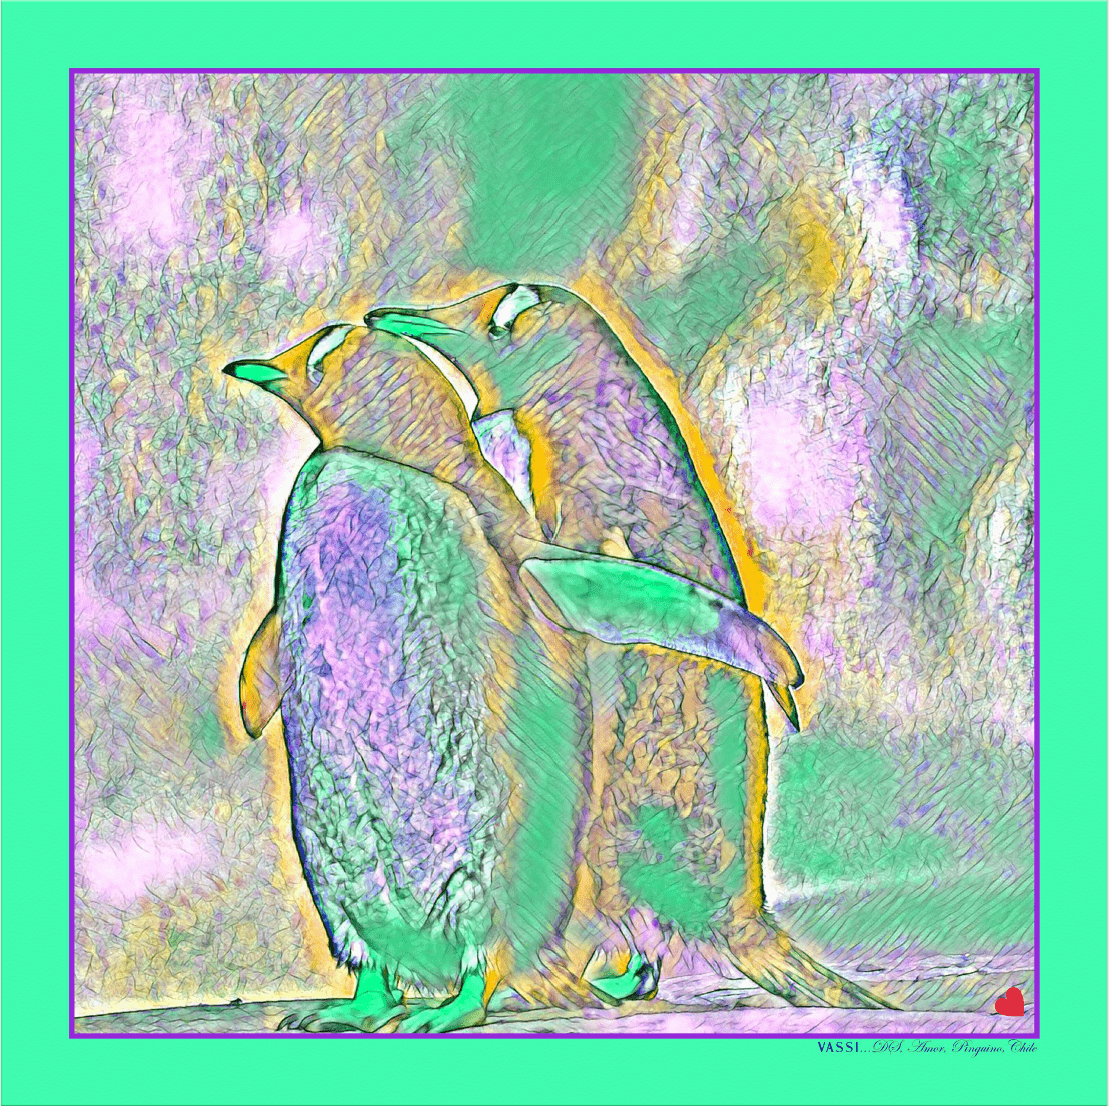 Penguins, Together Forever - 